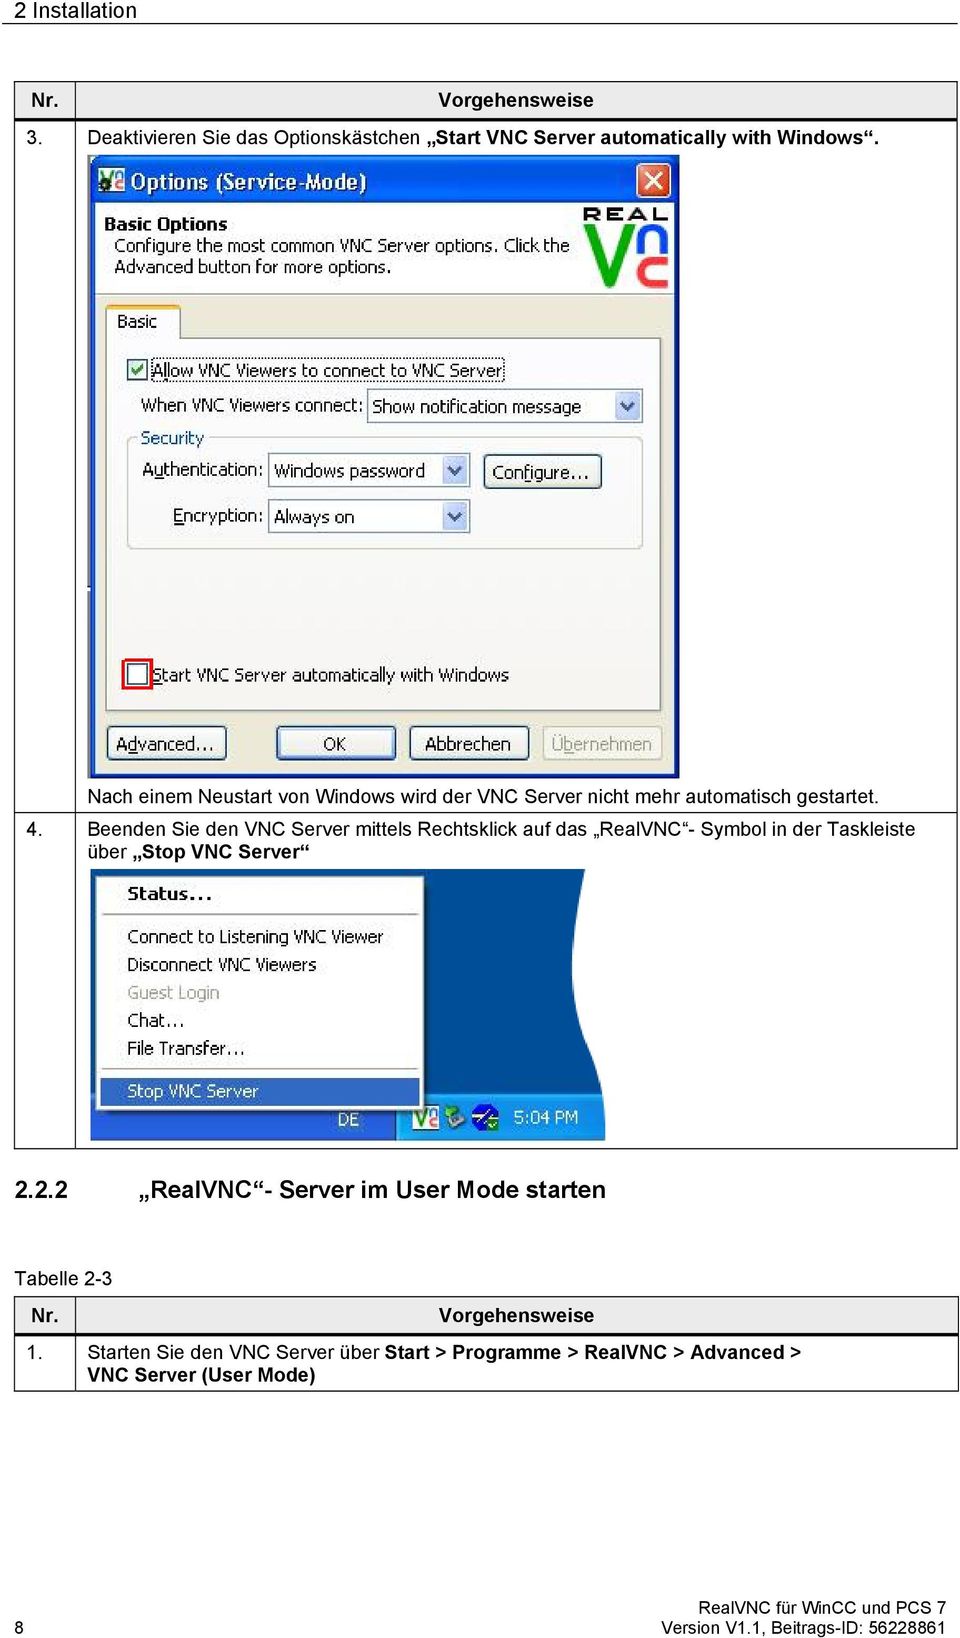 Beenden Sie den VNC Server mittels Rechtsklick auf das RealVNC - Symbol in der Taskleiste über Stop VNC Server 2.